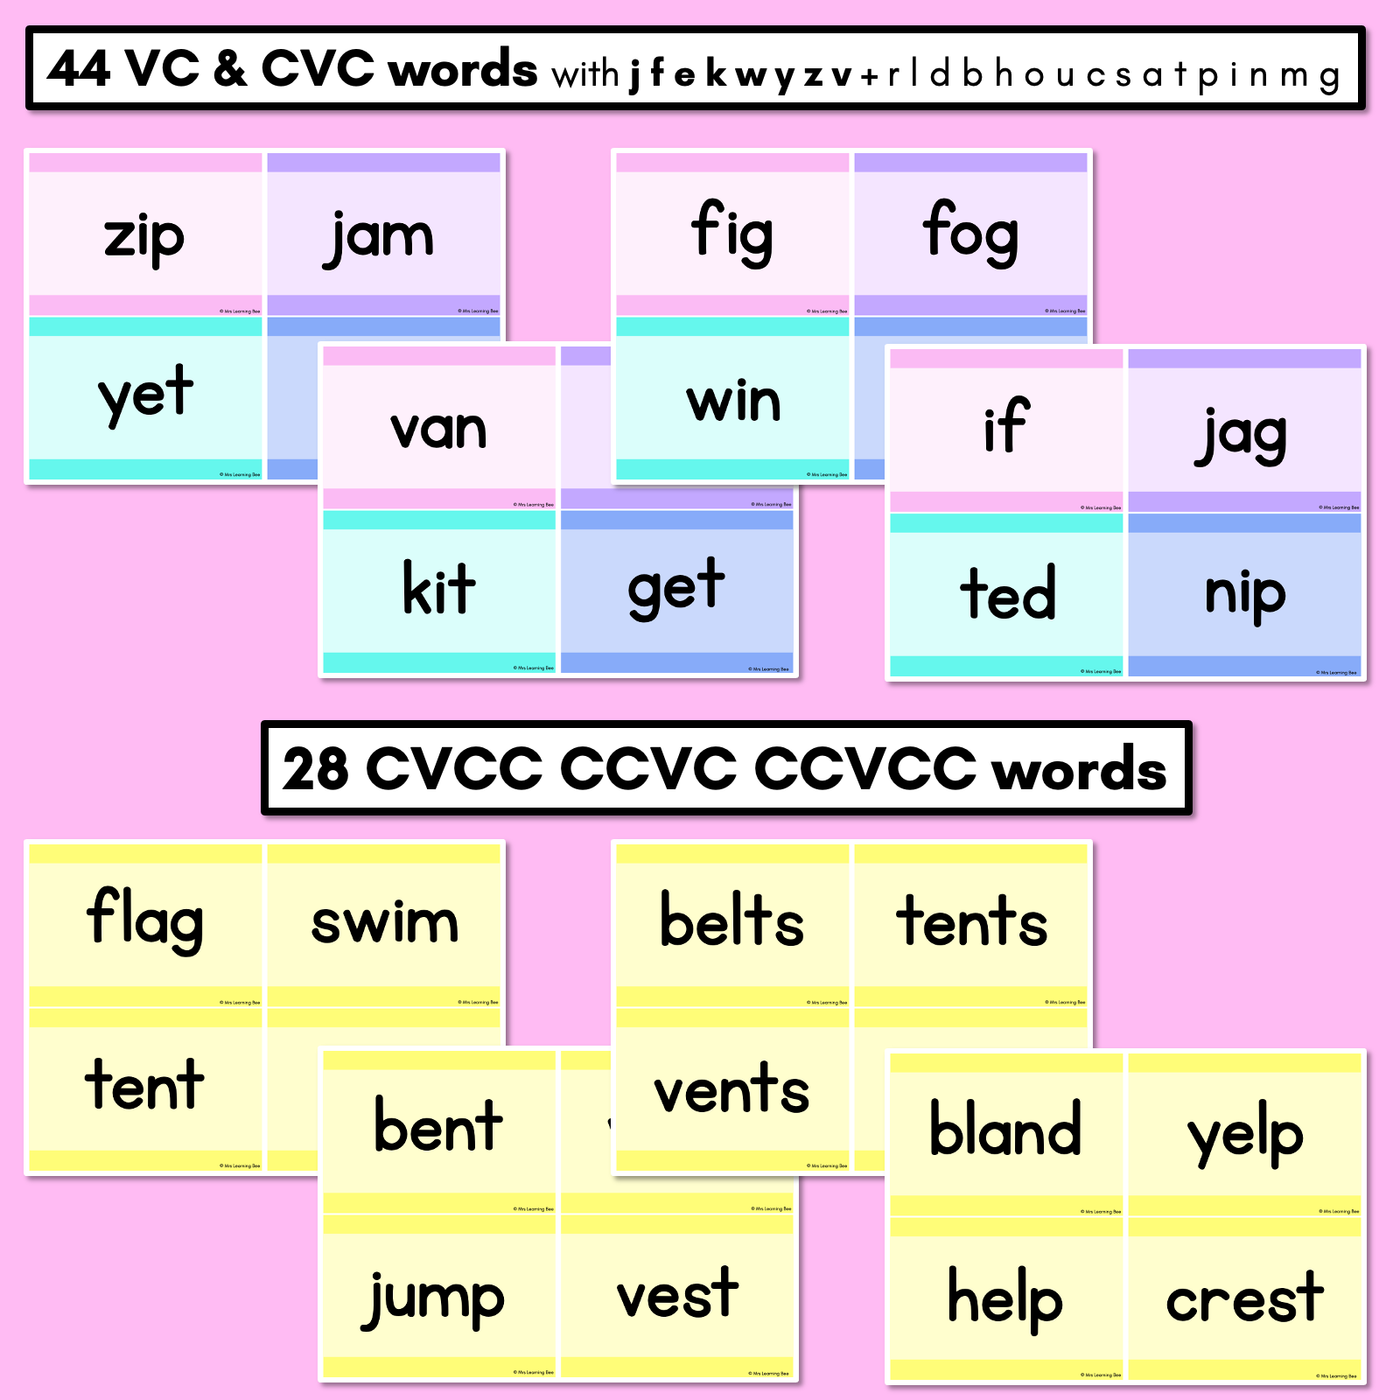 CVC CVCC CCVC Decodable Words and Sentence Cards - Set 3 - j f e k w y z v